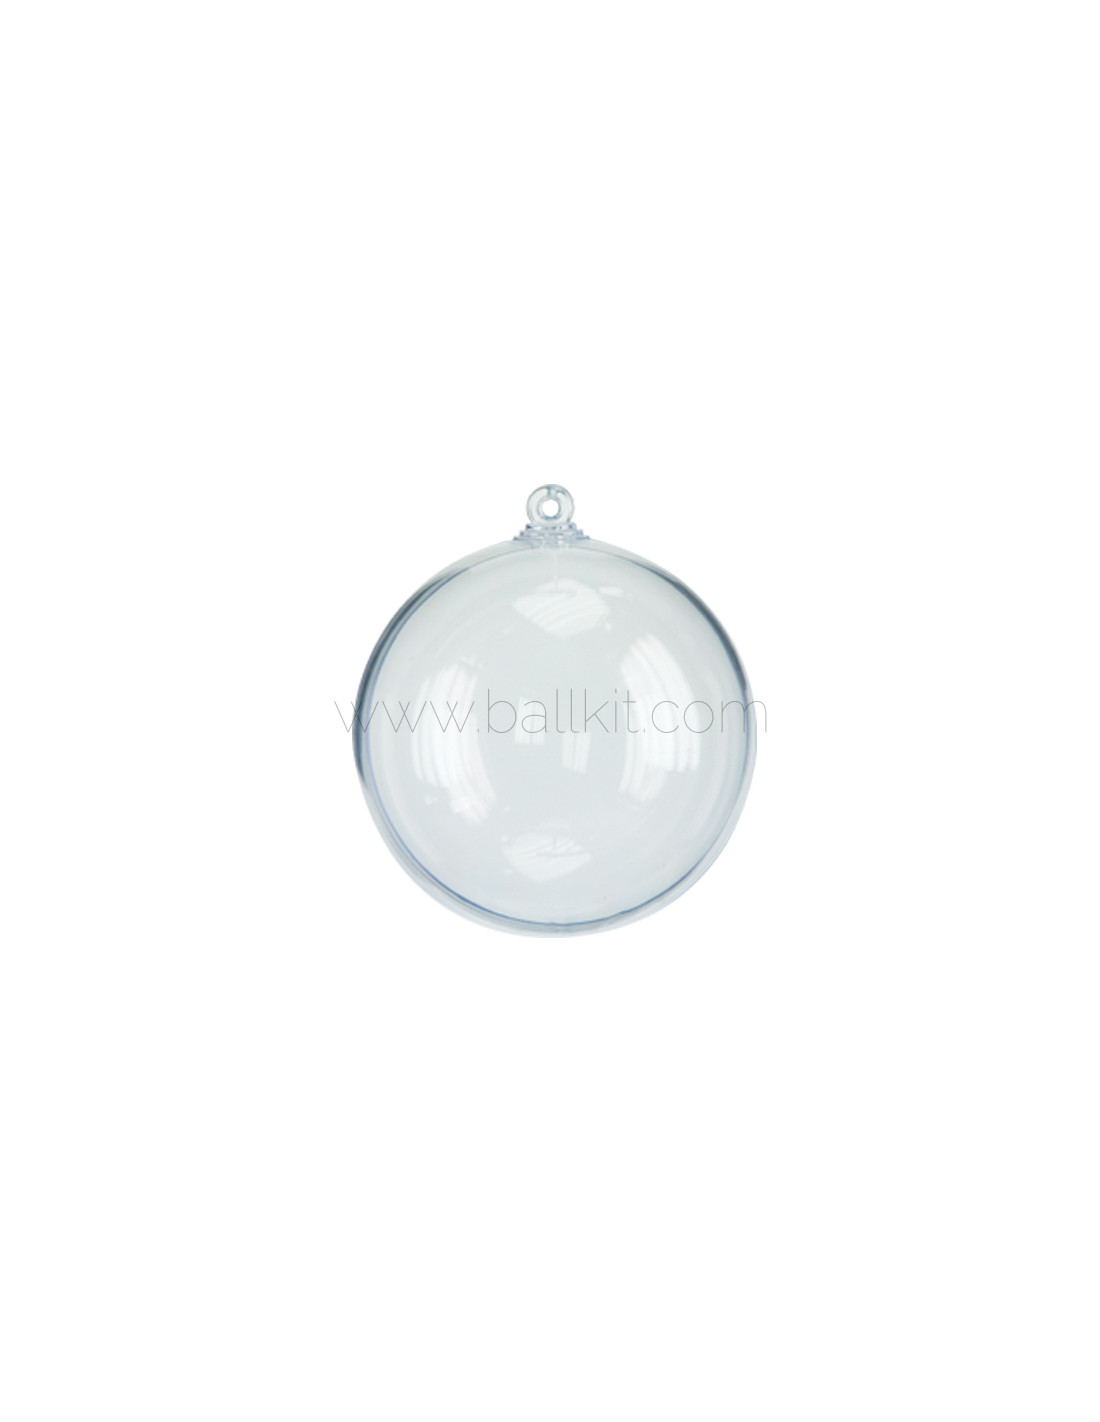 OUNONA 12pcs Cadeau Boule en Plastique Transparent Cadeau de noël Boule Transparente Boules de Noël 4cm Ornement 